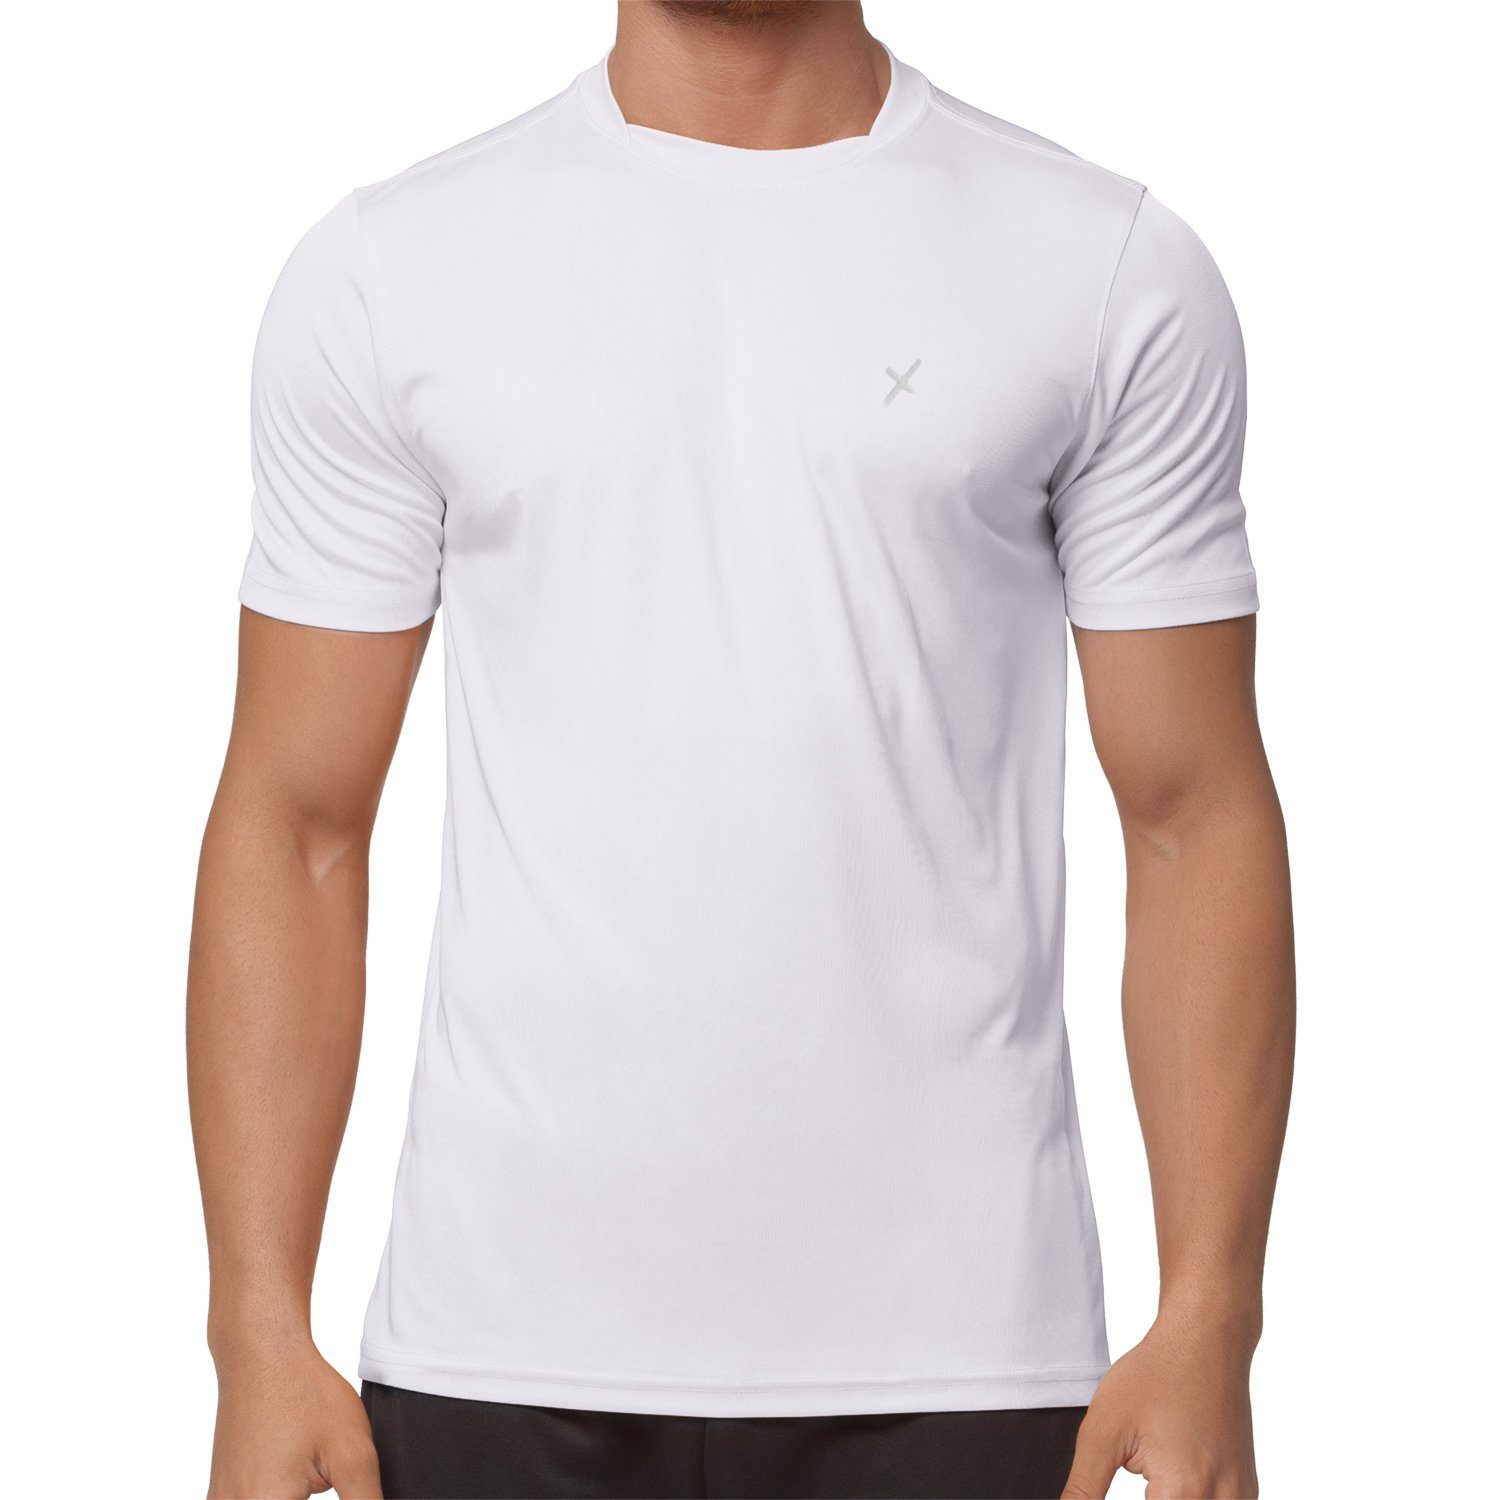 CFLEX Trainingsshirt Herren Sport Shirt Fitness T-Shirt Sportswear Collection Weiß